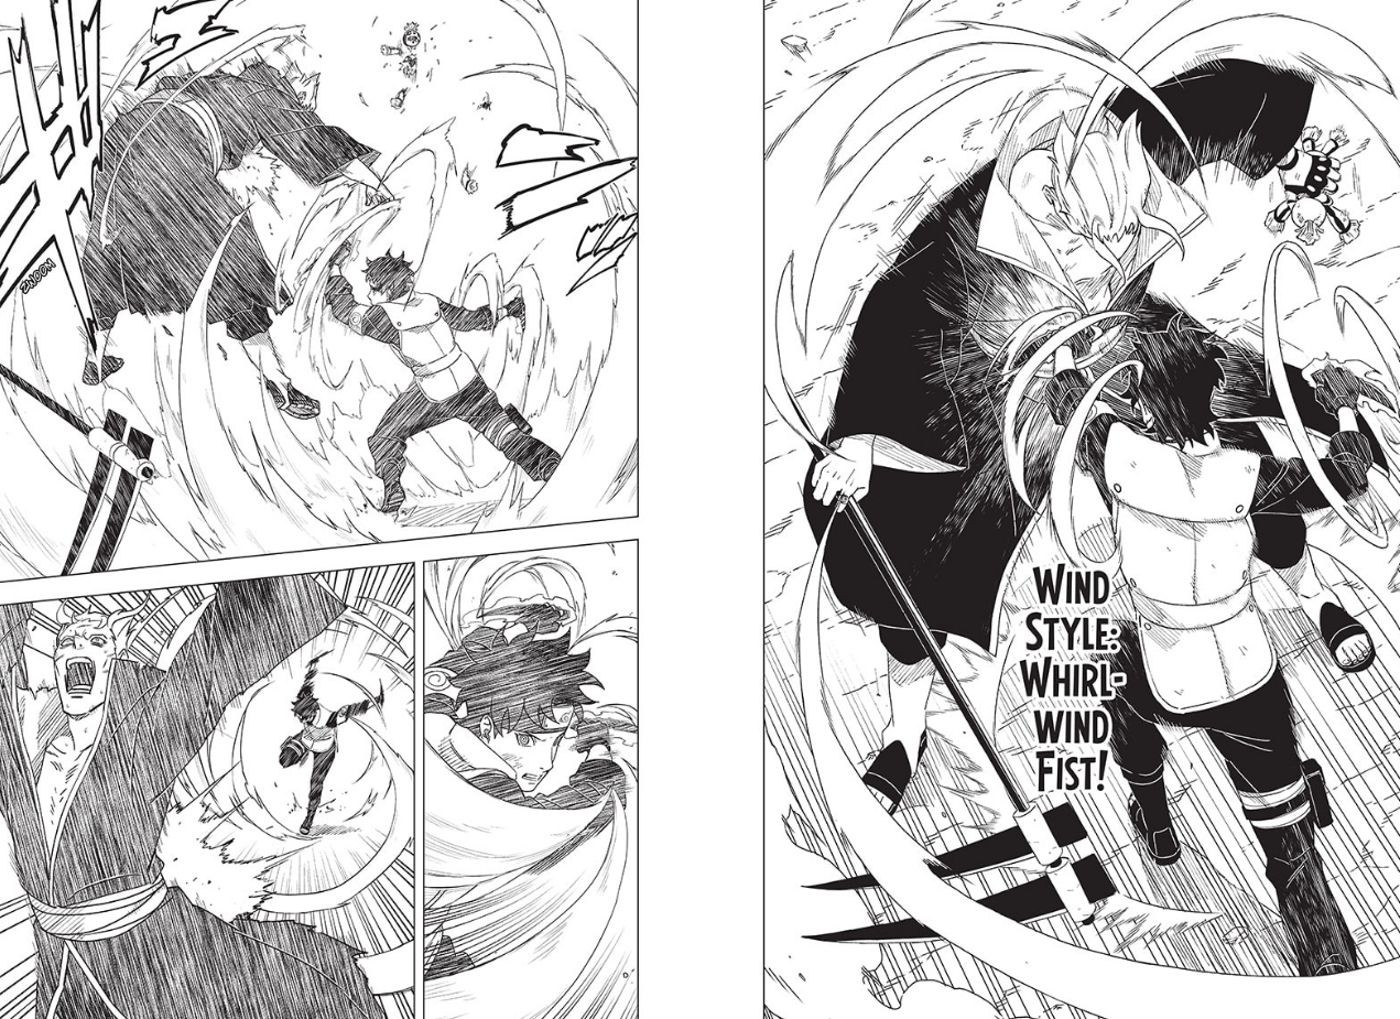 Mirai menggunakan Whirlwind Fist melawan Ryuki